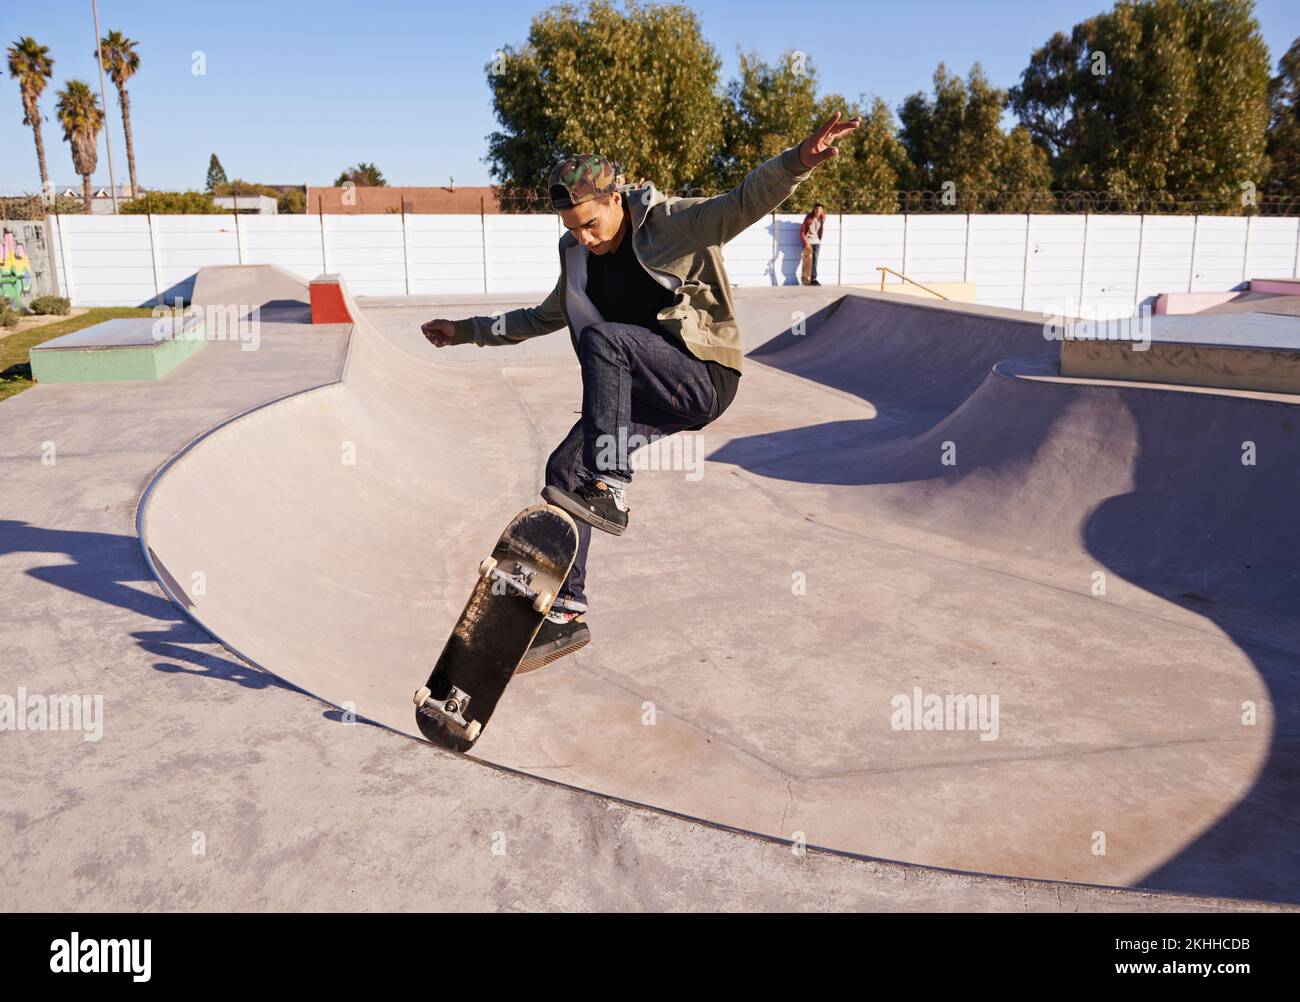 Découvrez-LE. Un jeune homme qui fait des tours sur son skateboard au skate Park. Banque D'Images